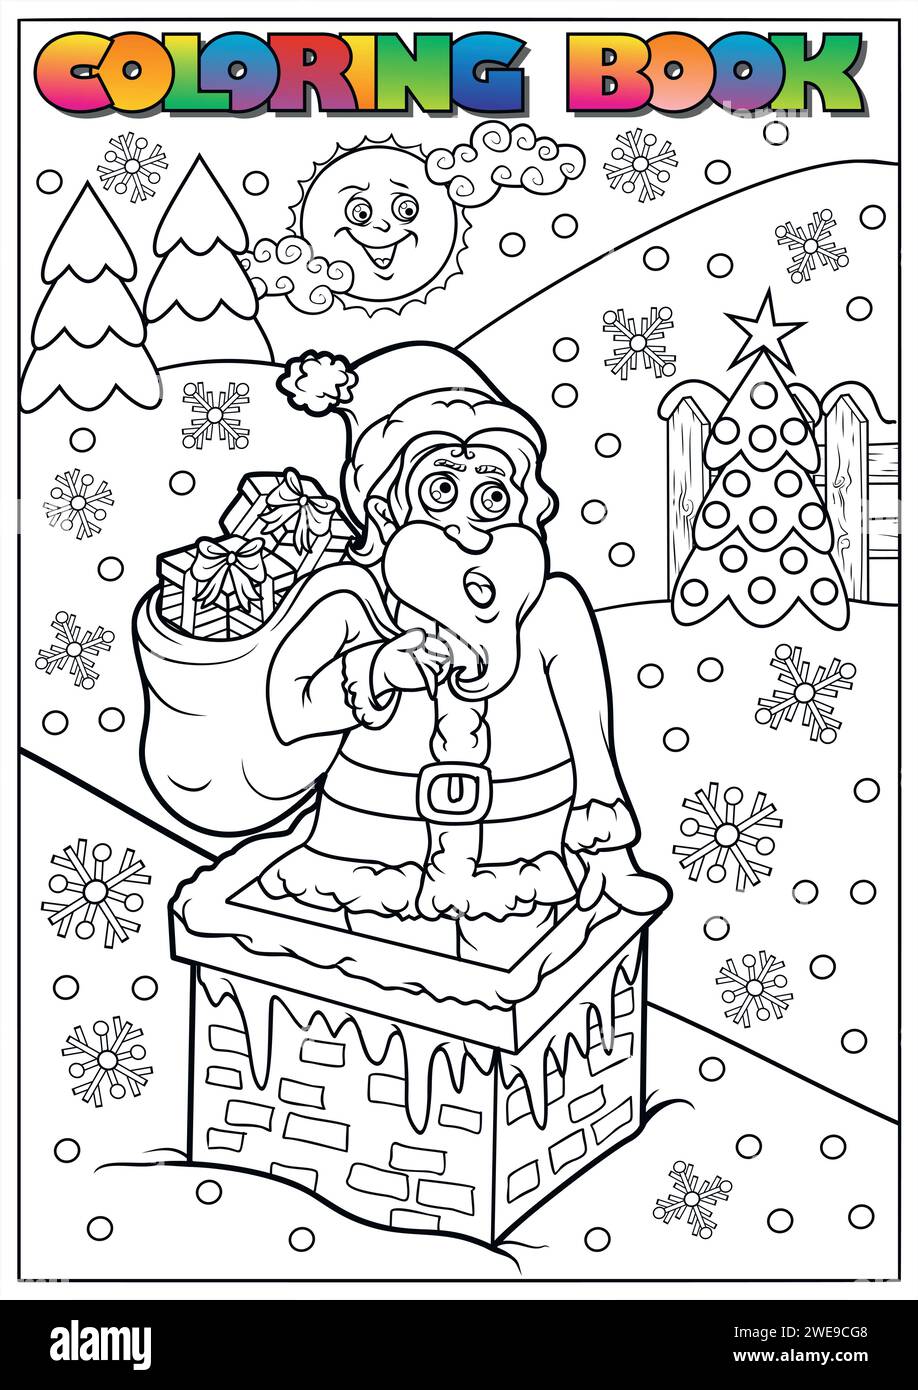 Livre de coloriage d'hiver pour enfants - Père Noël avec un sac de cadeaux et une cheminée Illustration de Vecteur